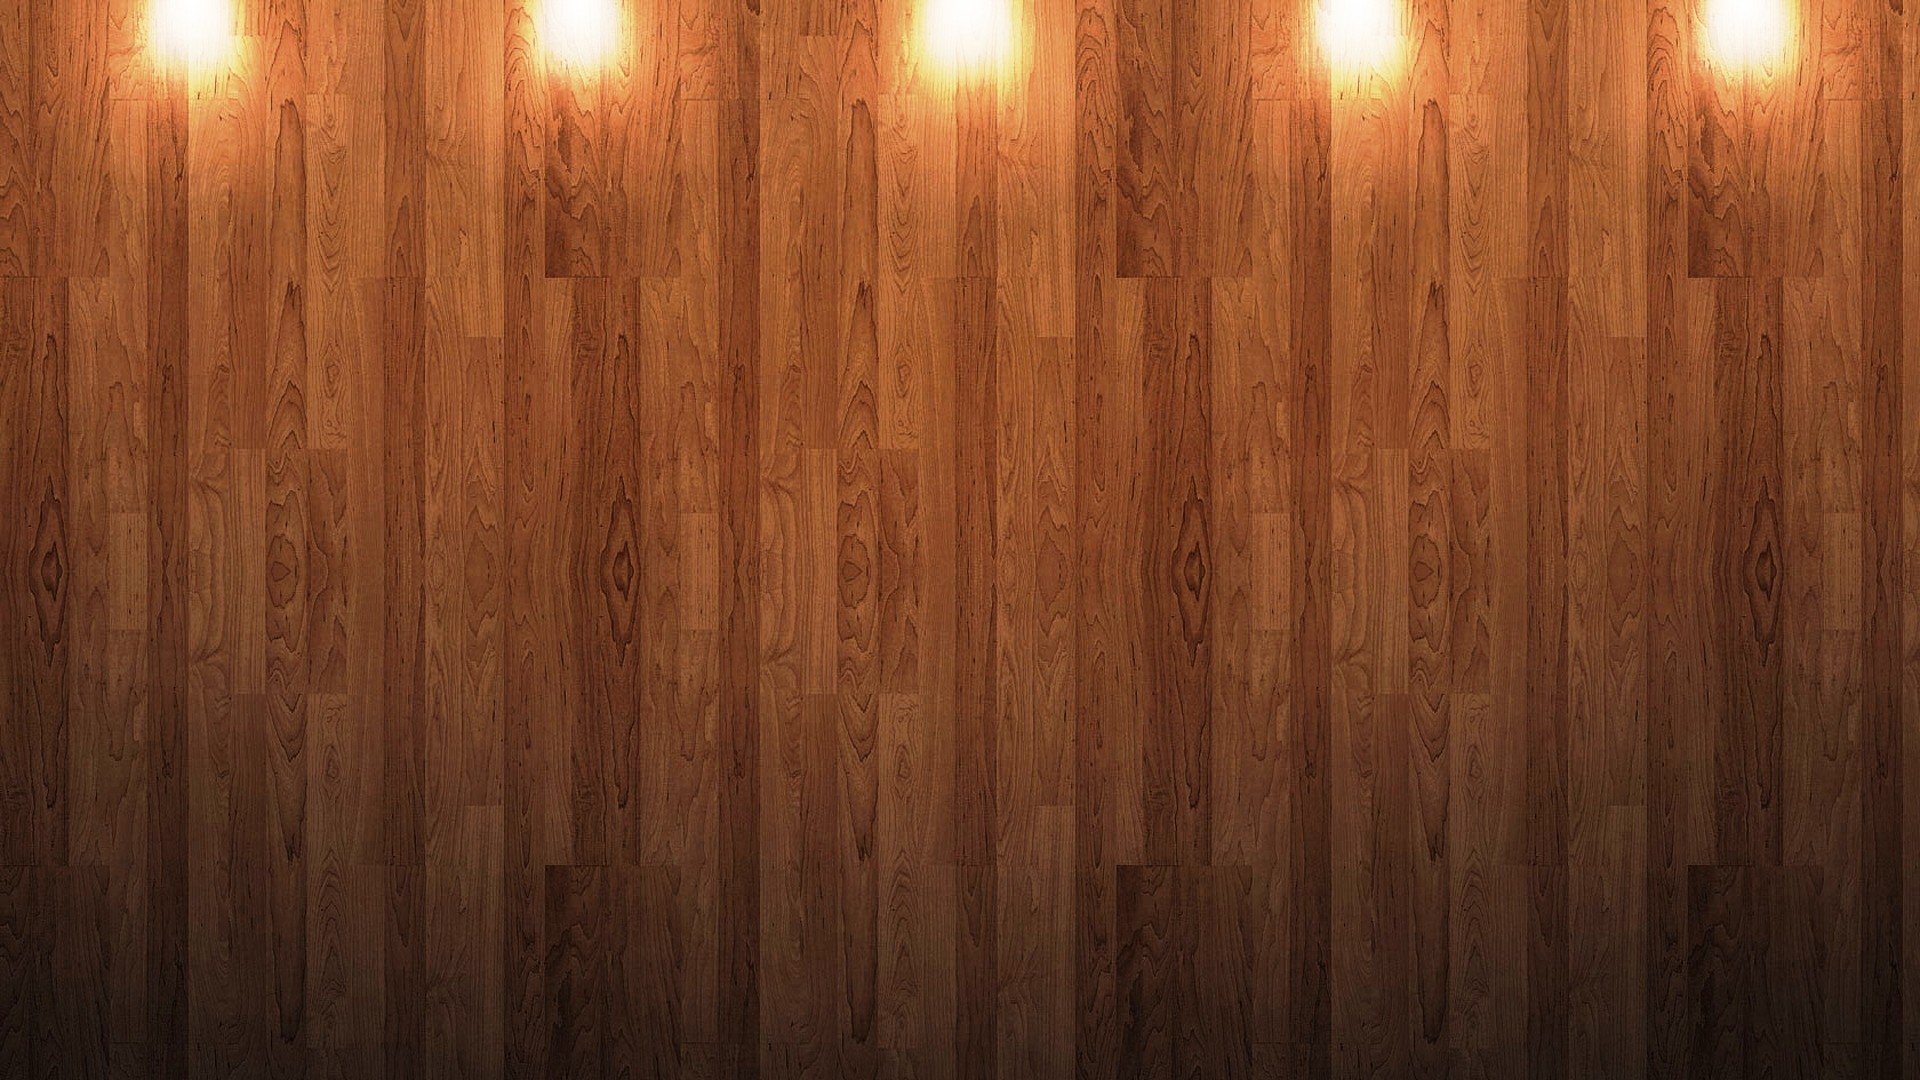 “HD Wood backgrounds” là bộ sưu tập những hình ảnh đẹp nhất về gỗ cho thiết bị của bạn. Với độ phân giải cao và màu sắc sống động, bạn sẽ cảm thấy như đang chạm tay vào những tấm gỗ thật sự. Hãy tải ngay bộ sưu tập này để tạo ra trải nghiệm tuyệt đỉnh cho máy tính của bạn.